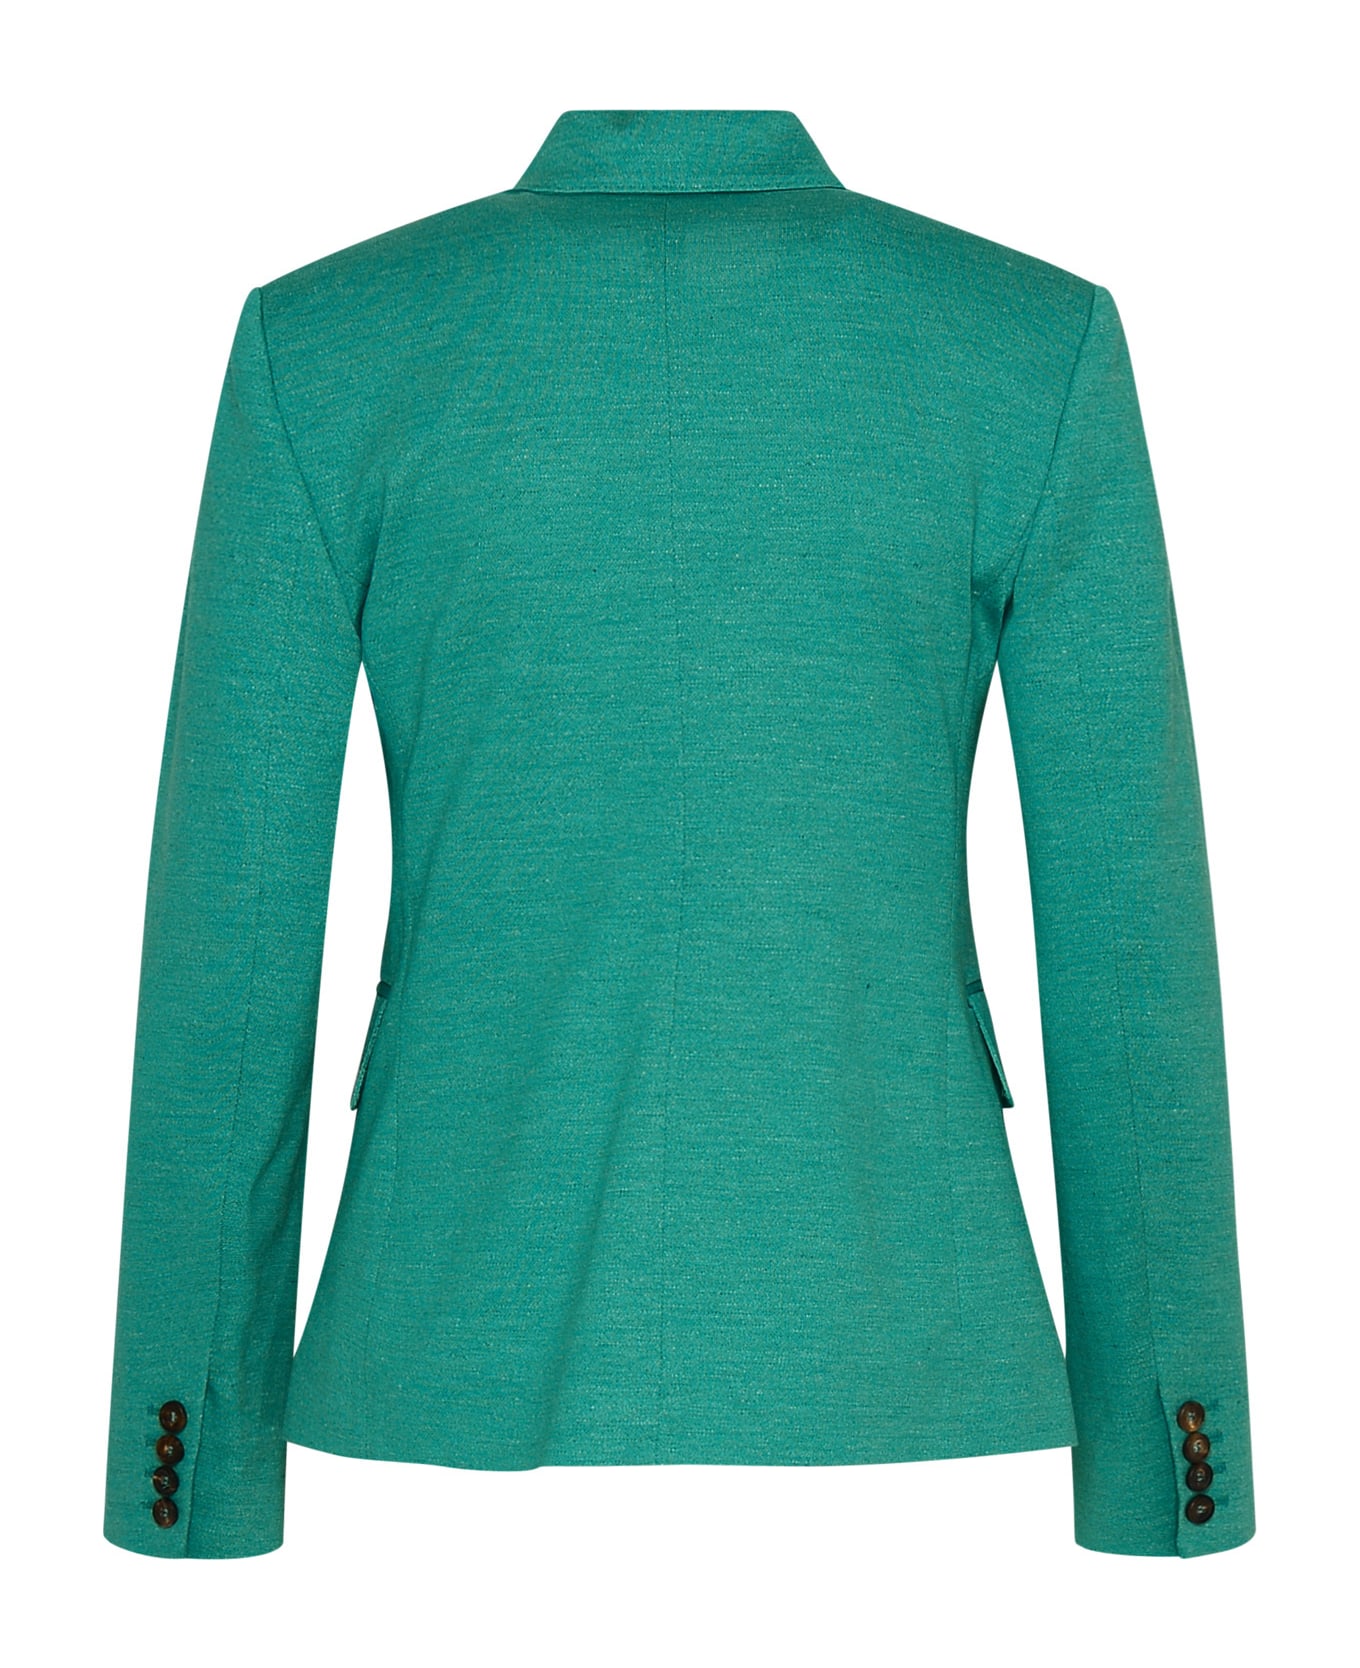 Max Mara Cashmere Green Cotton Blend Zirlo Blazer Jacket - 003 ブレザー